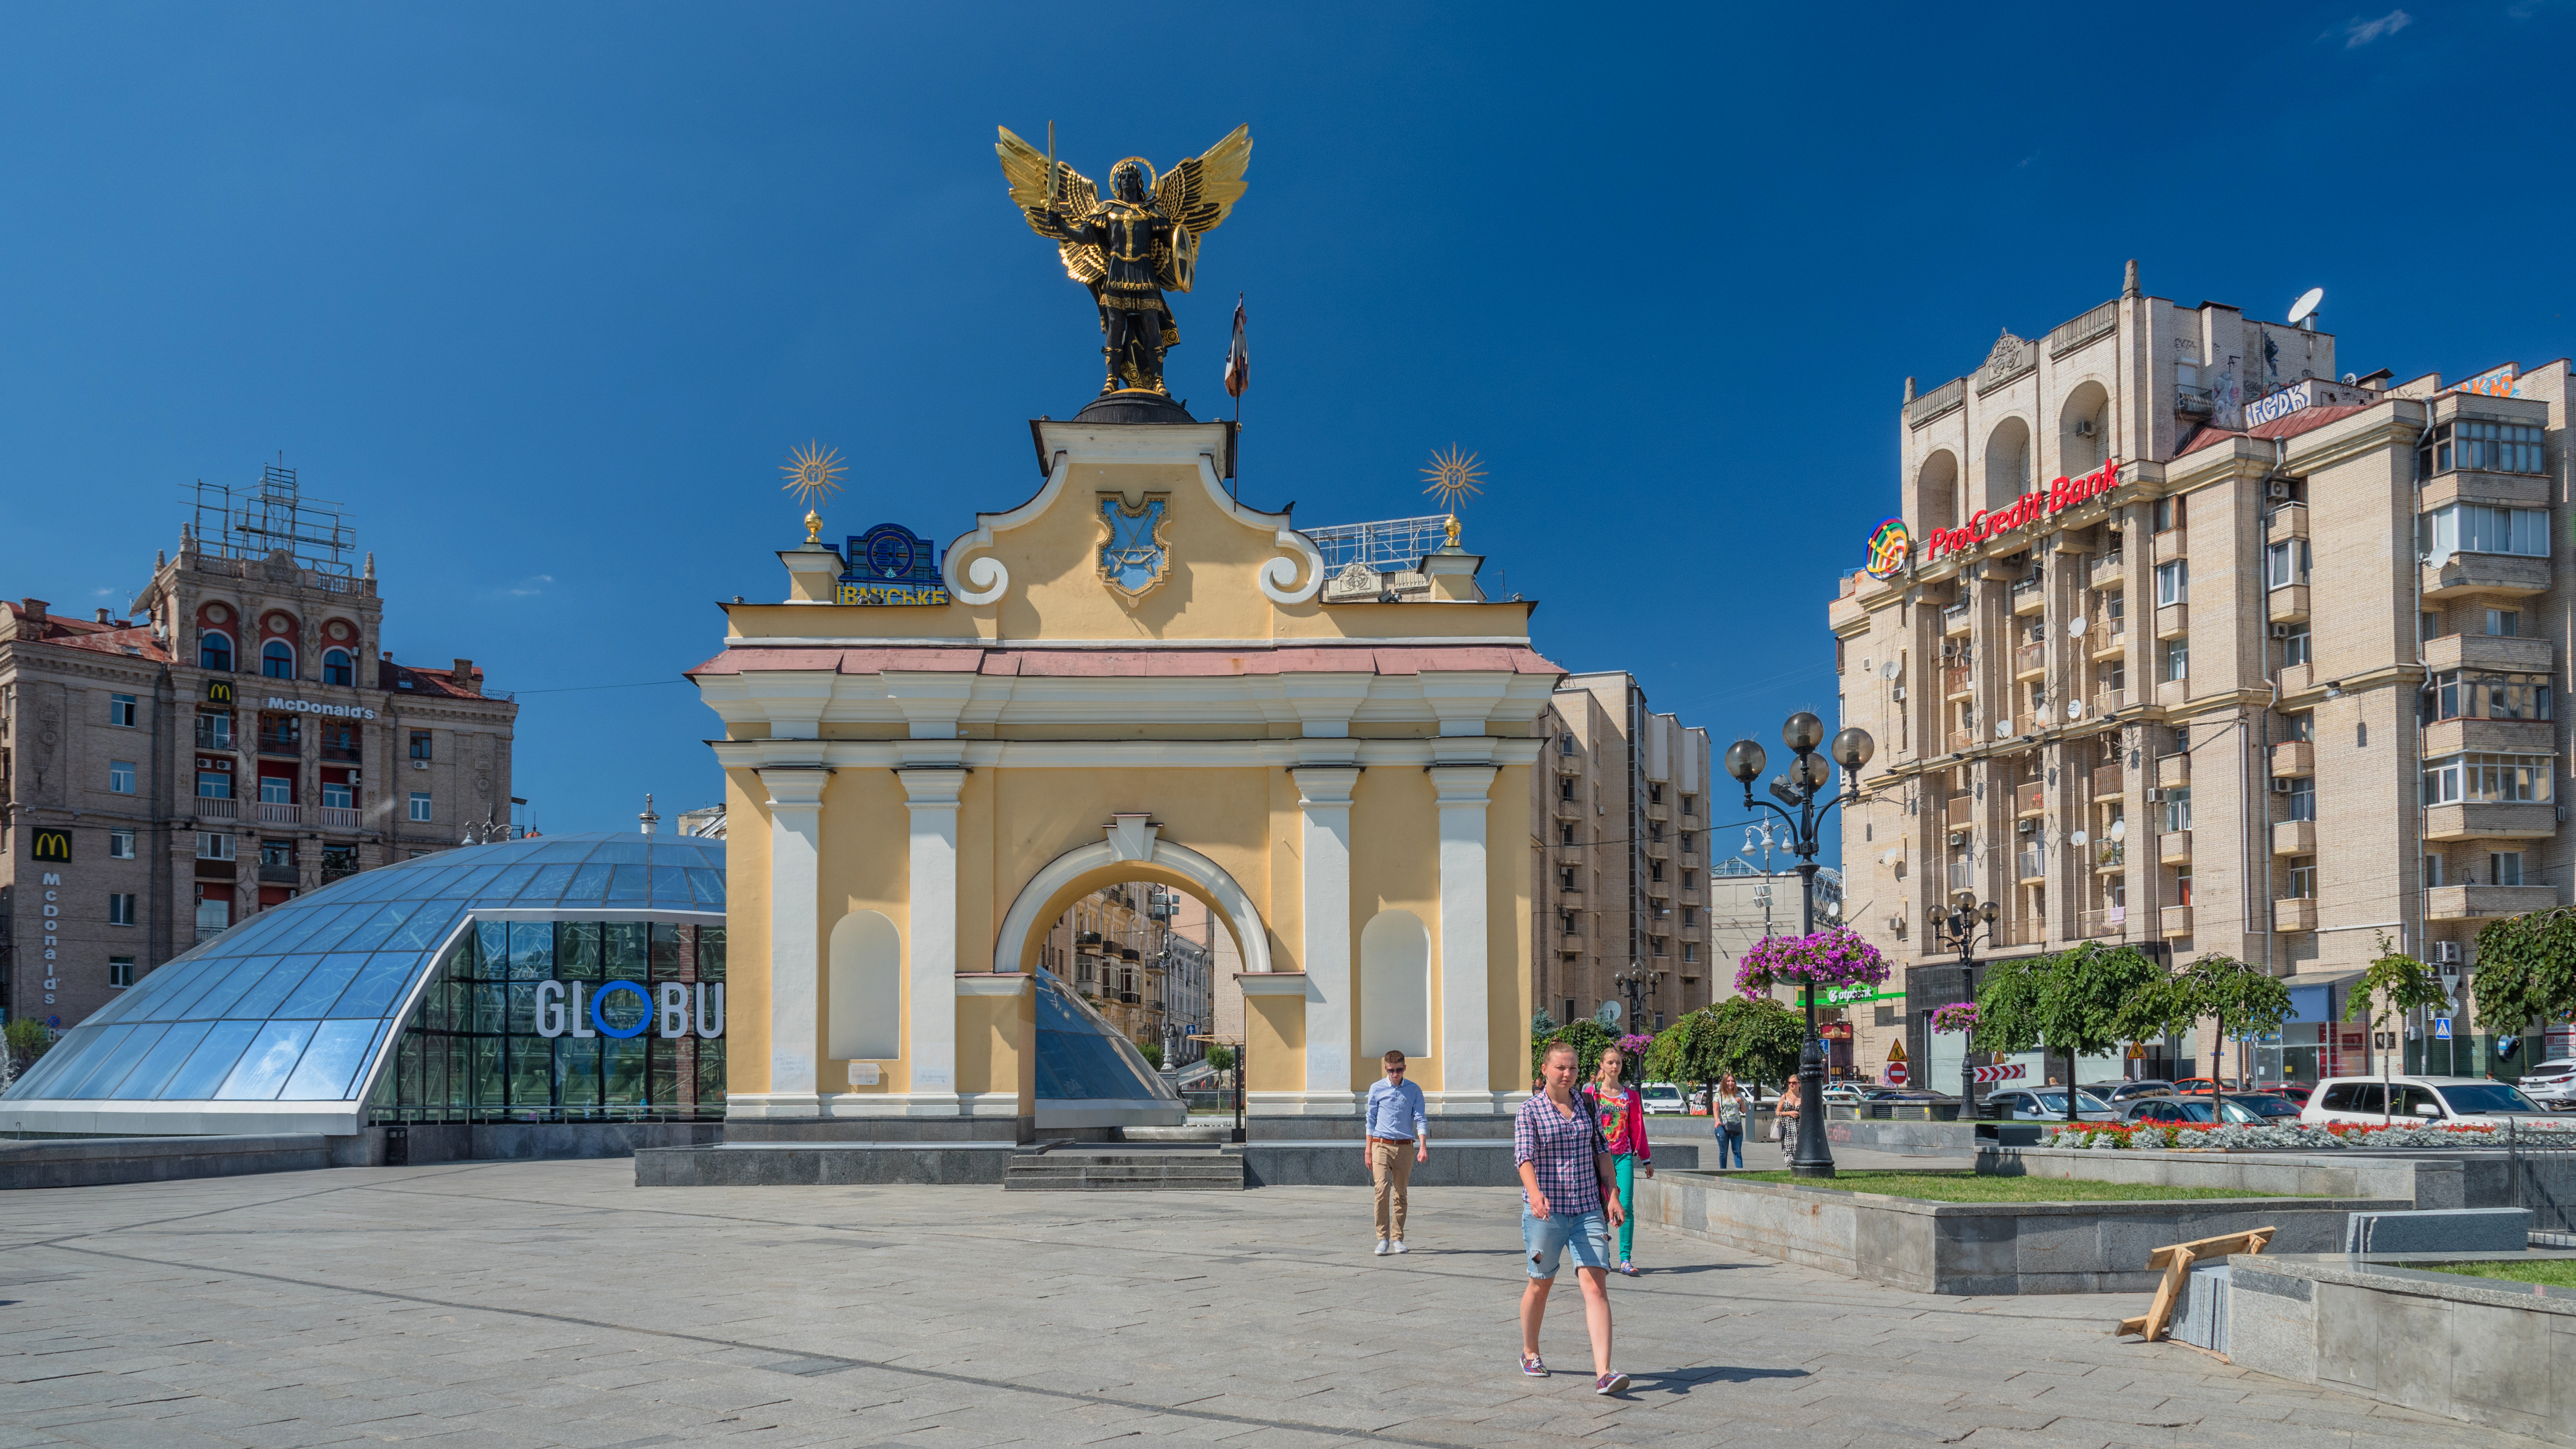 Обои города Киев Украина - бесплатные картинки на Fonwall